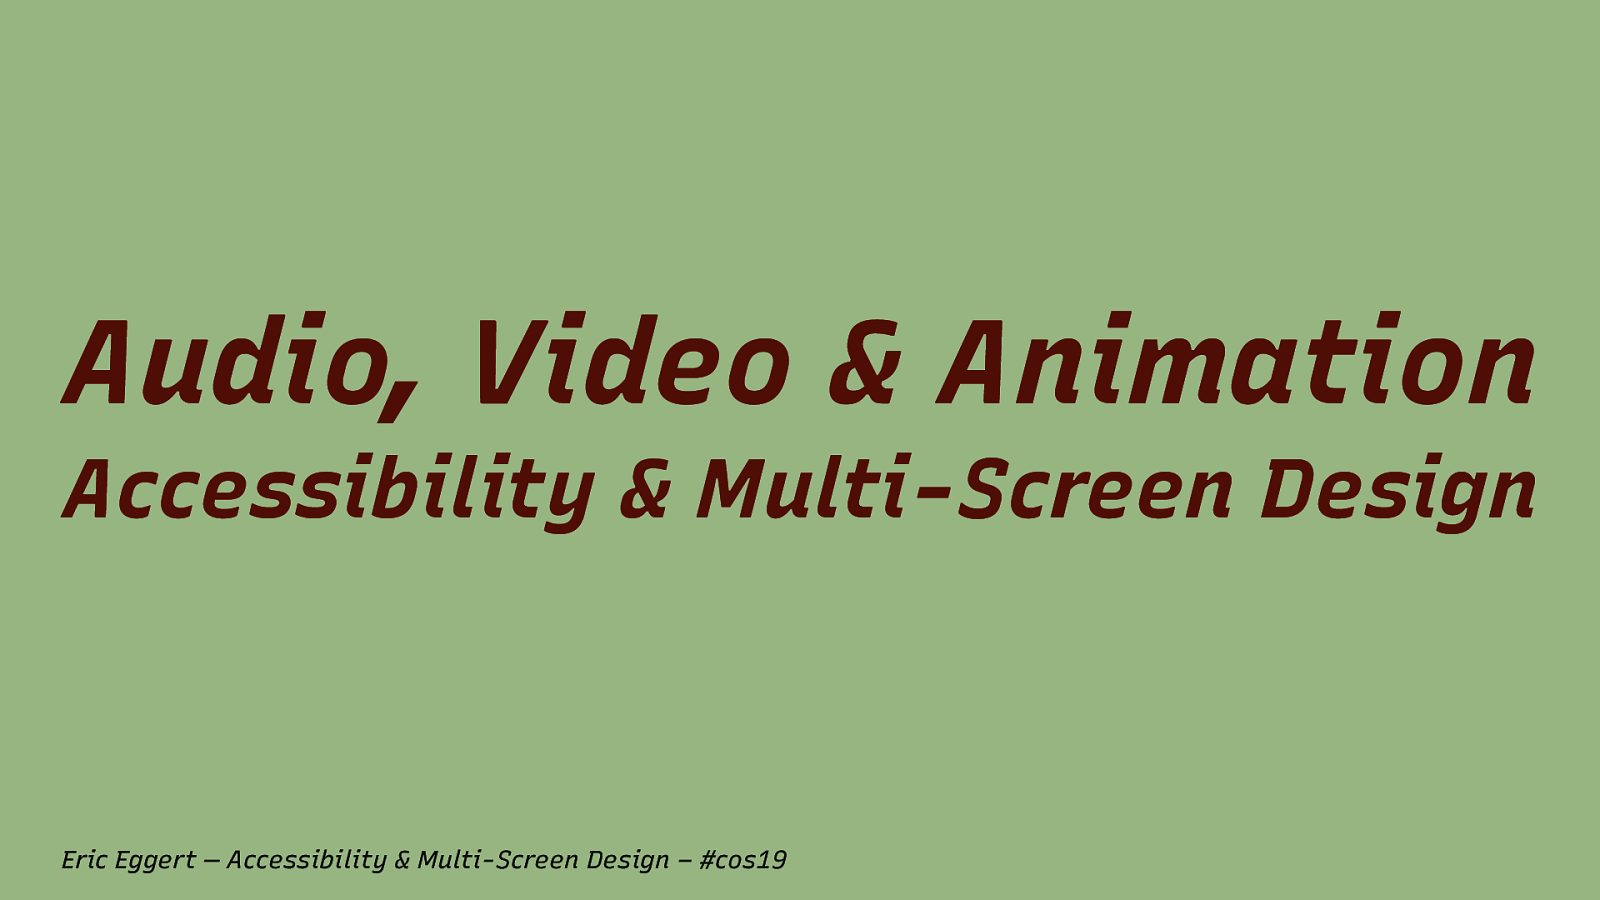 Accessibility & Multi-Screen Design: Audio, Video & Animation